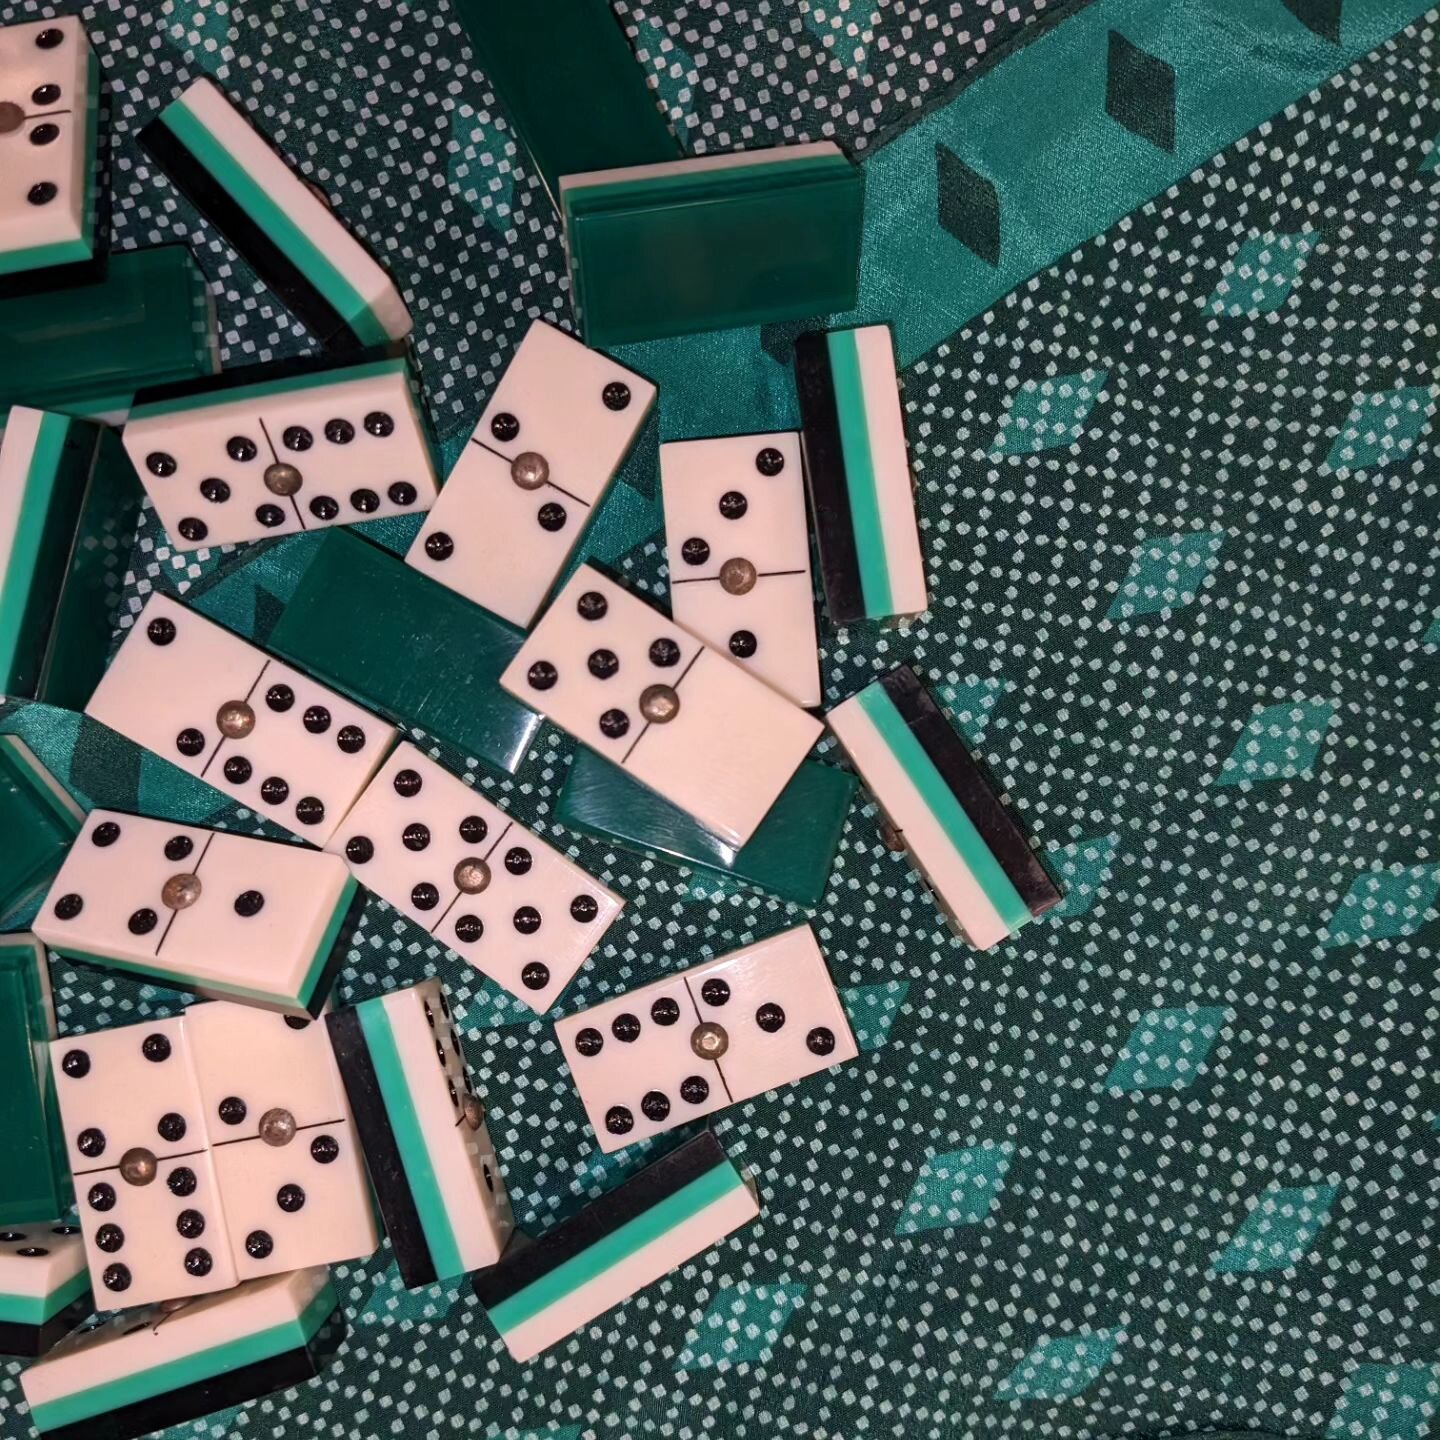 Vintage dominoes 💚